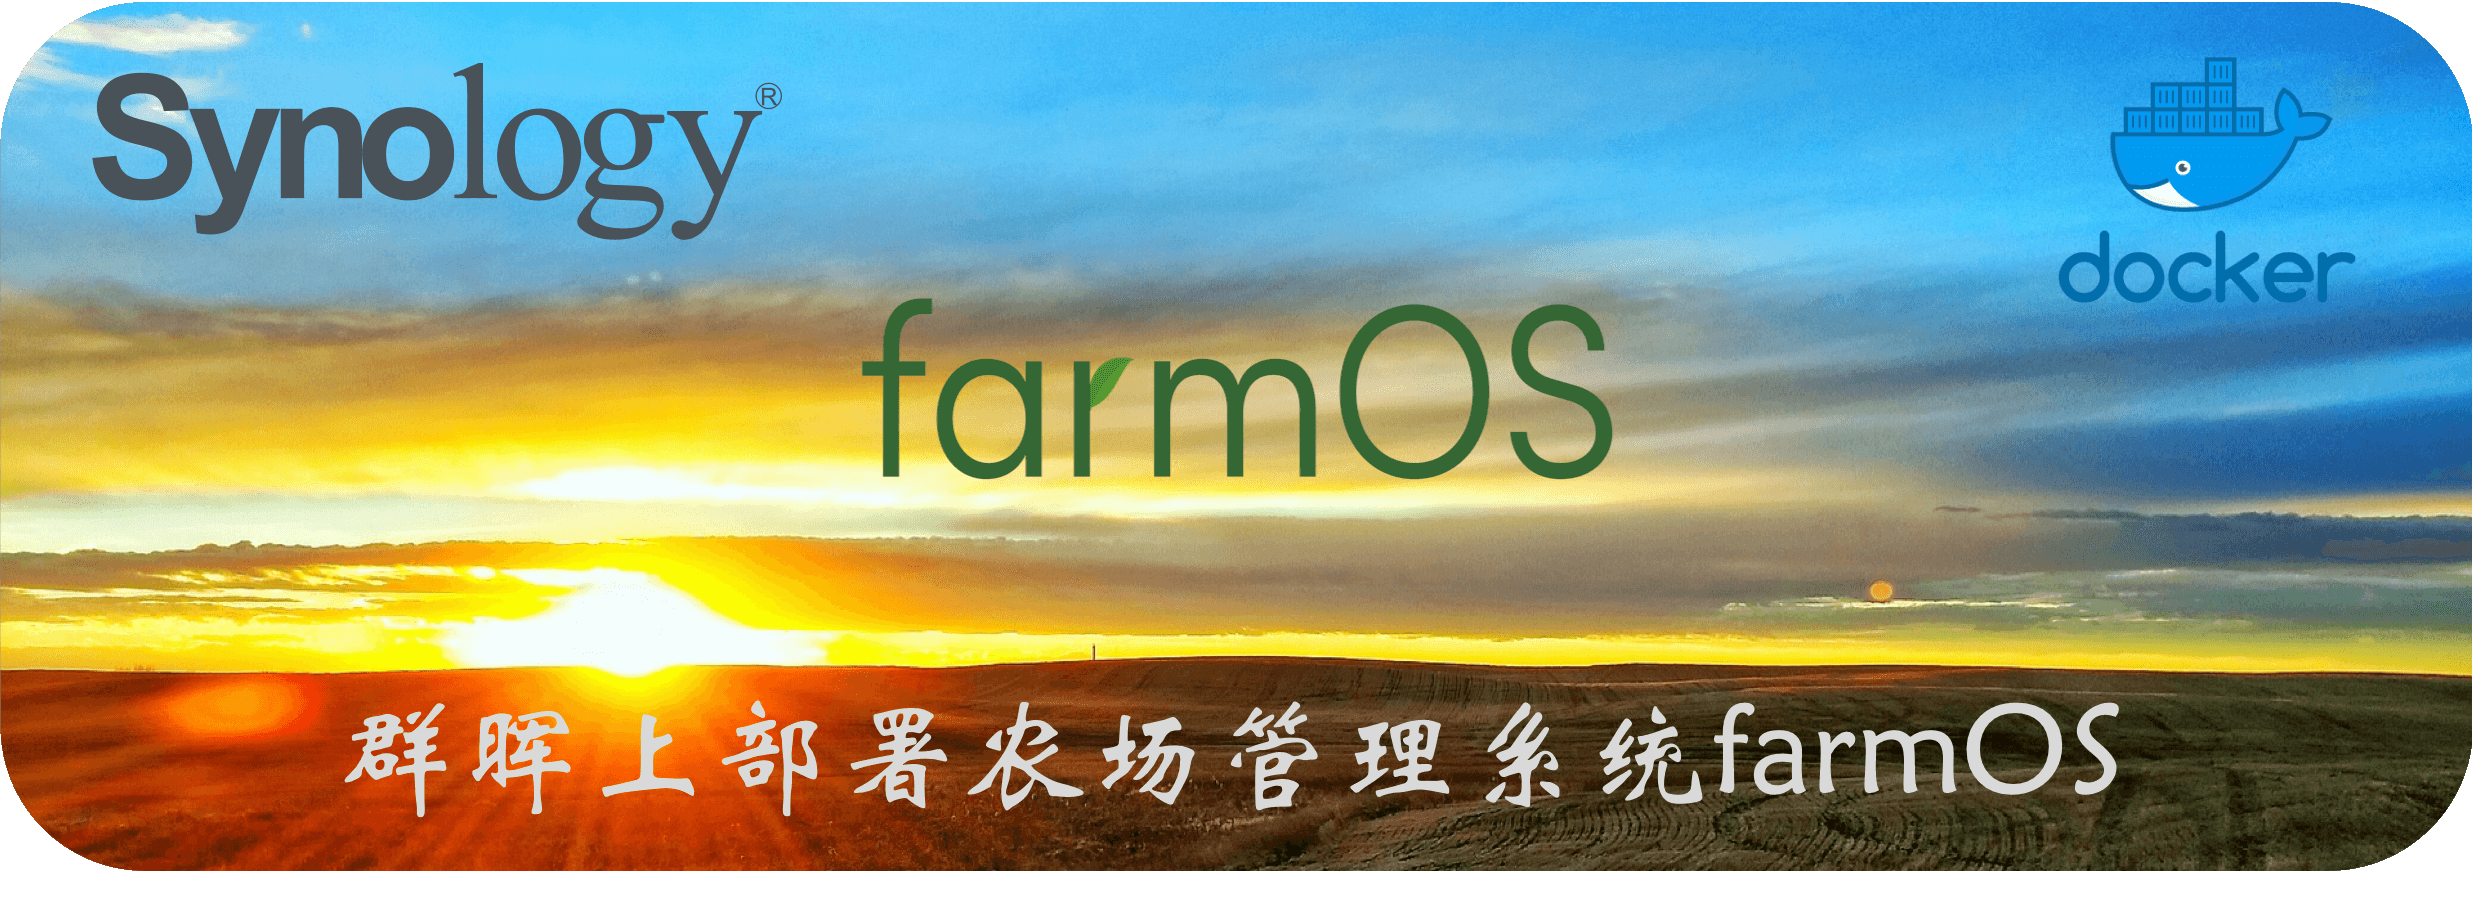 群晖上部署农场管理系统farmOS